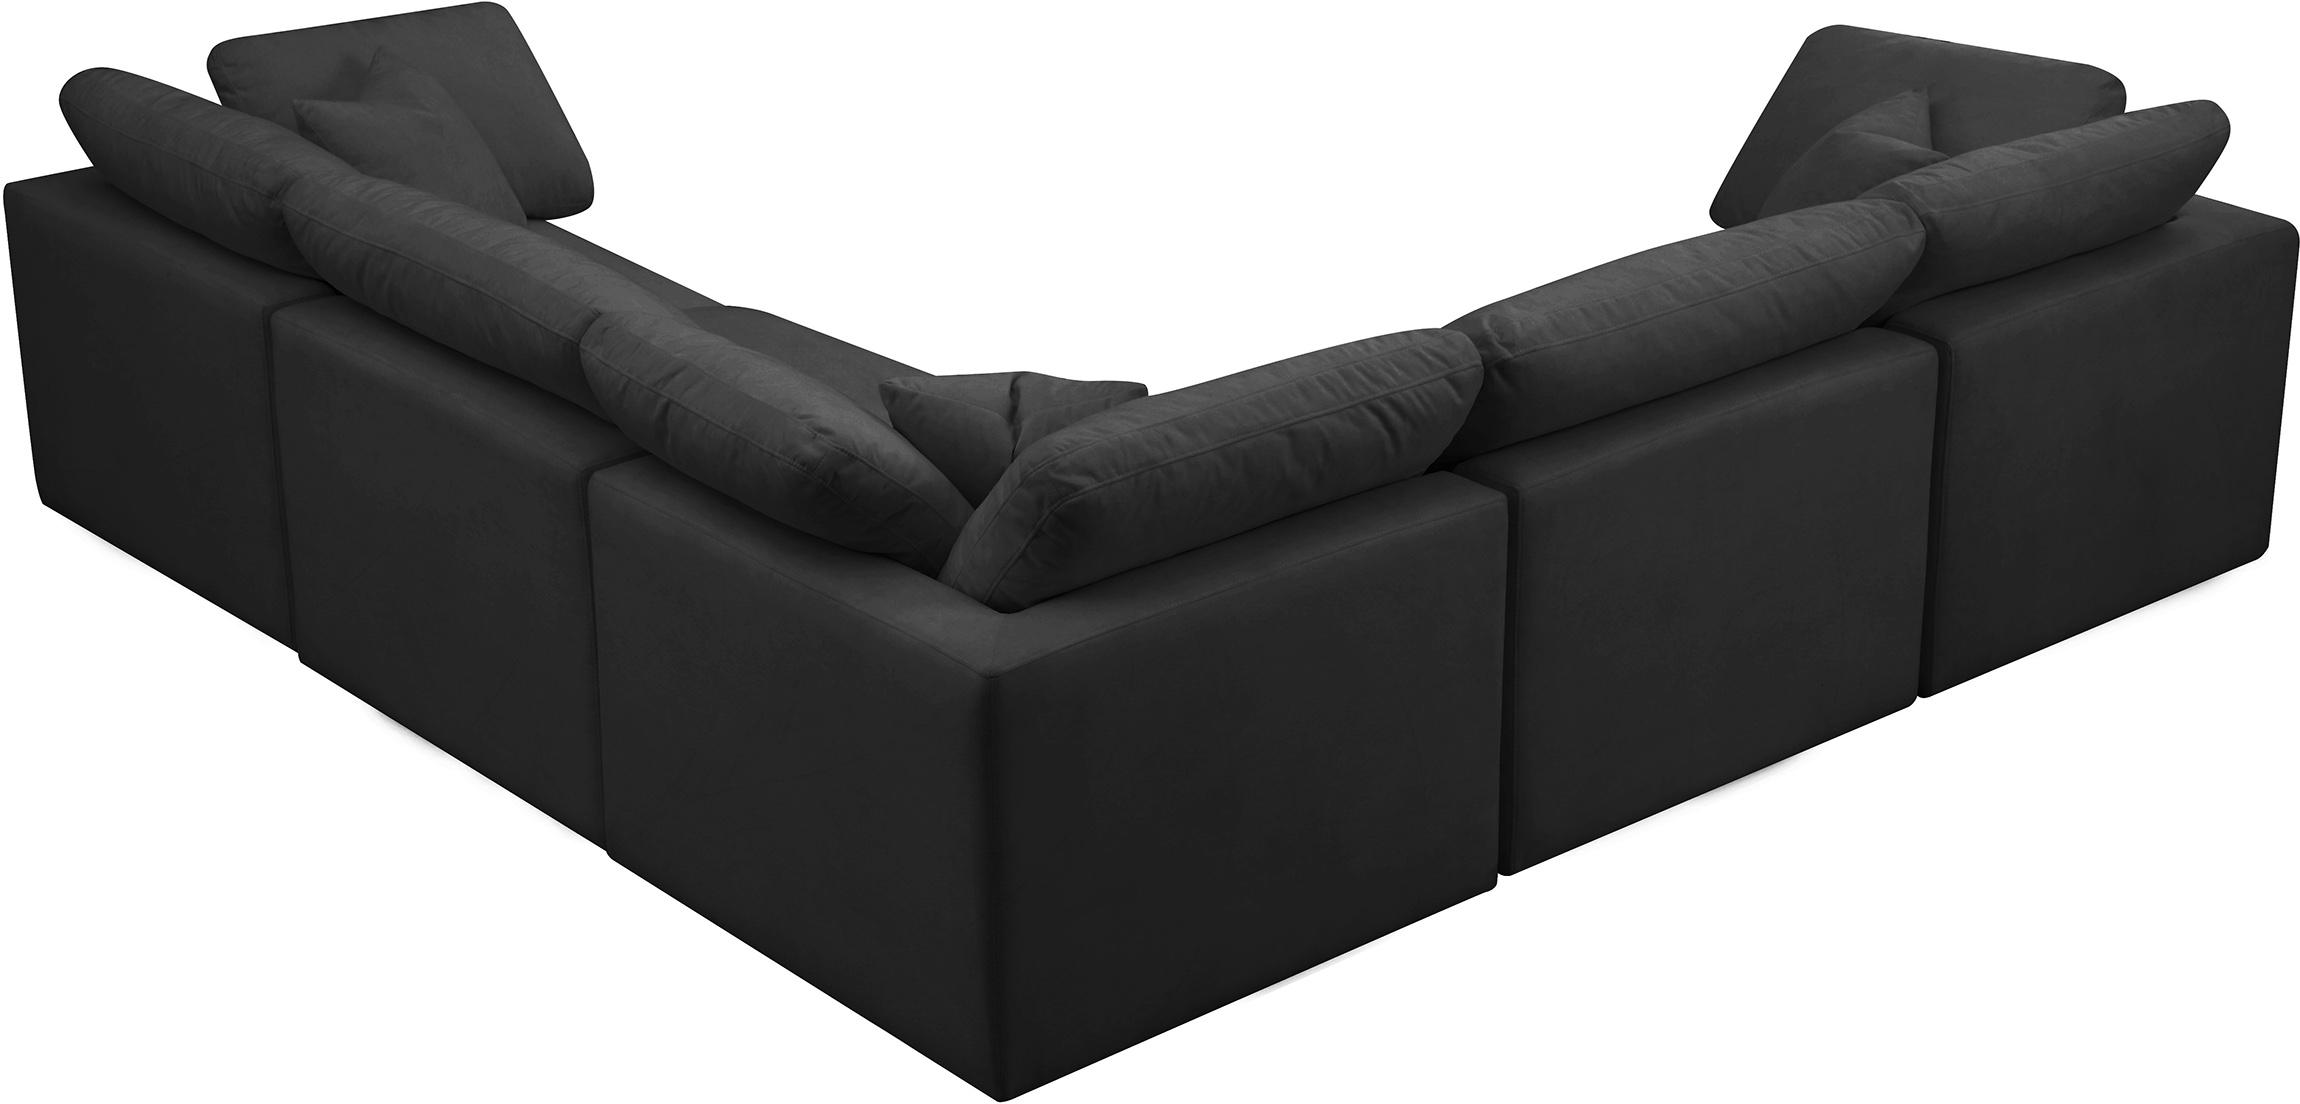 

    
Meridian Furniture 602Black-Sec5C Modular Sectional Sofa Black 602Black-Sec5C
